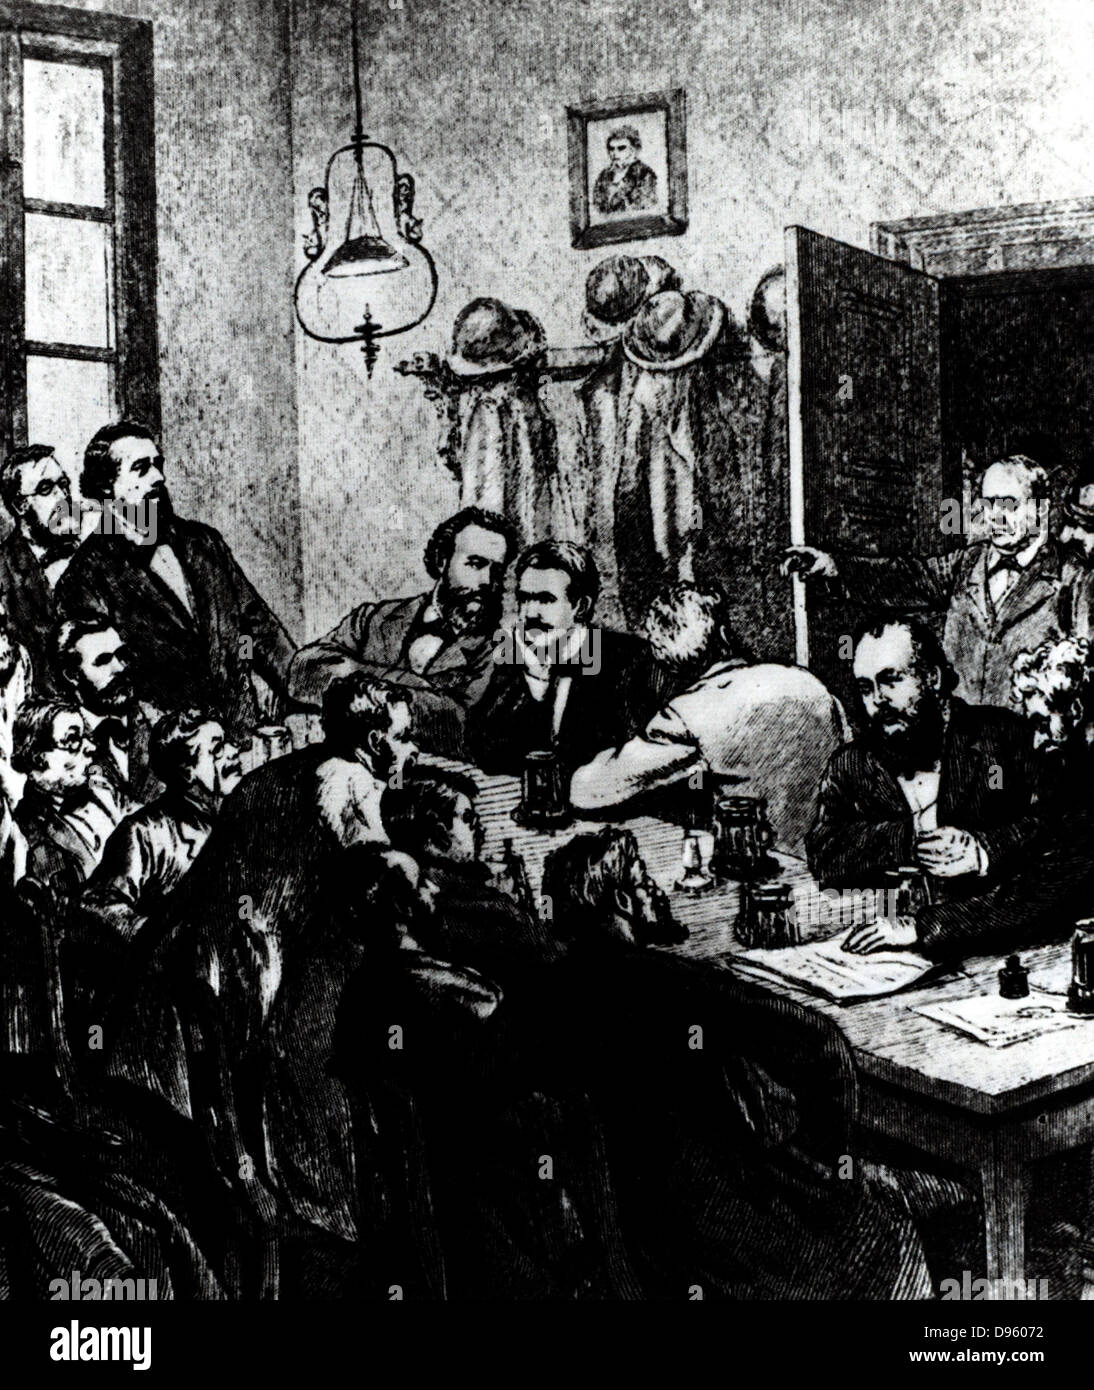 Das Aufteilen einer Sitzung eine Sitzung der Sozialdemokraten, Leipzig, 1881. Unter den Teilnehmern waren Wilhelm Liebknecht und August Bebel. Gravur. Stockfoto